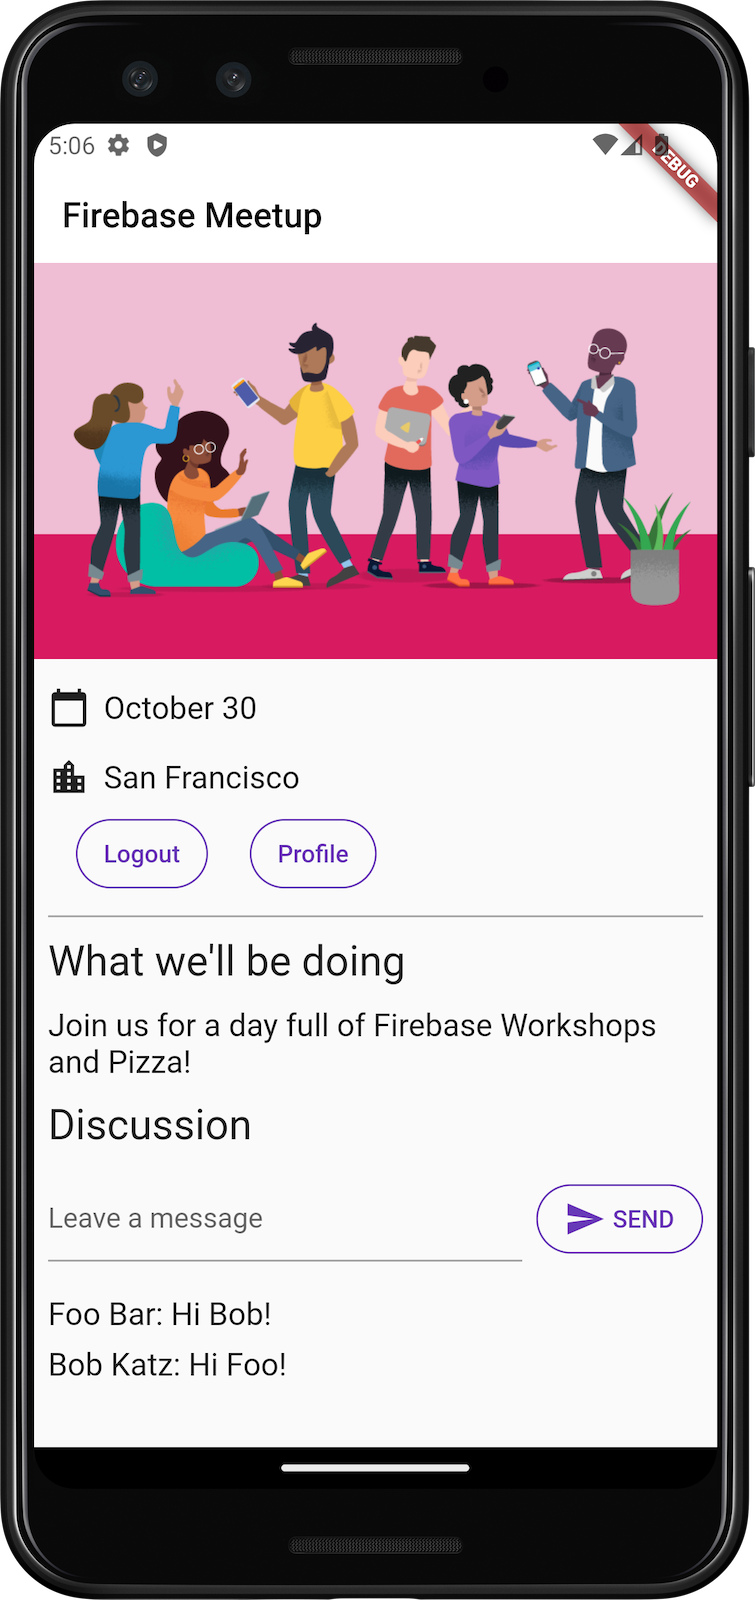 La schermata iniziale dell'app su Android con integrazione della chat